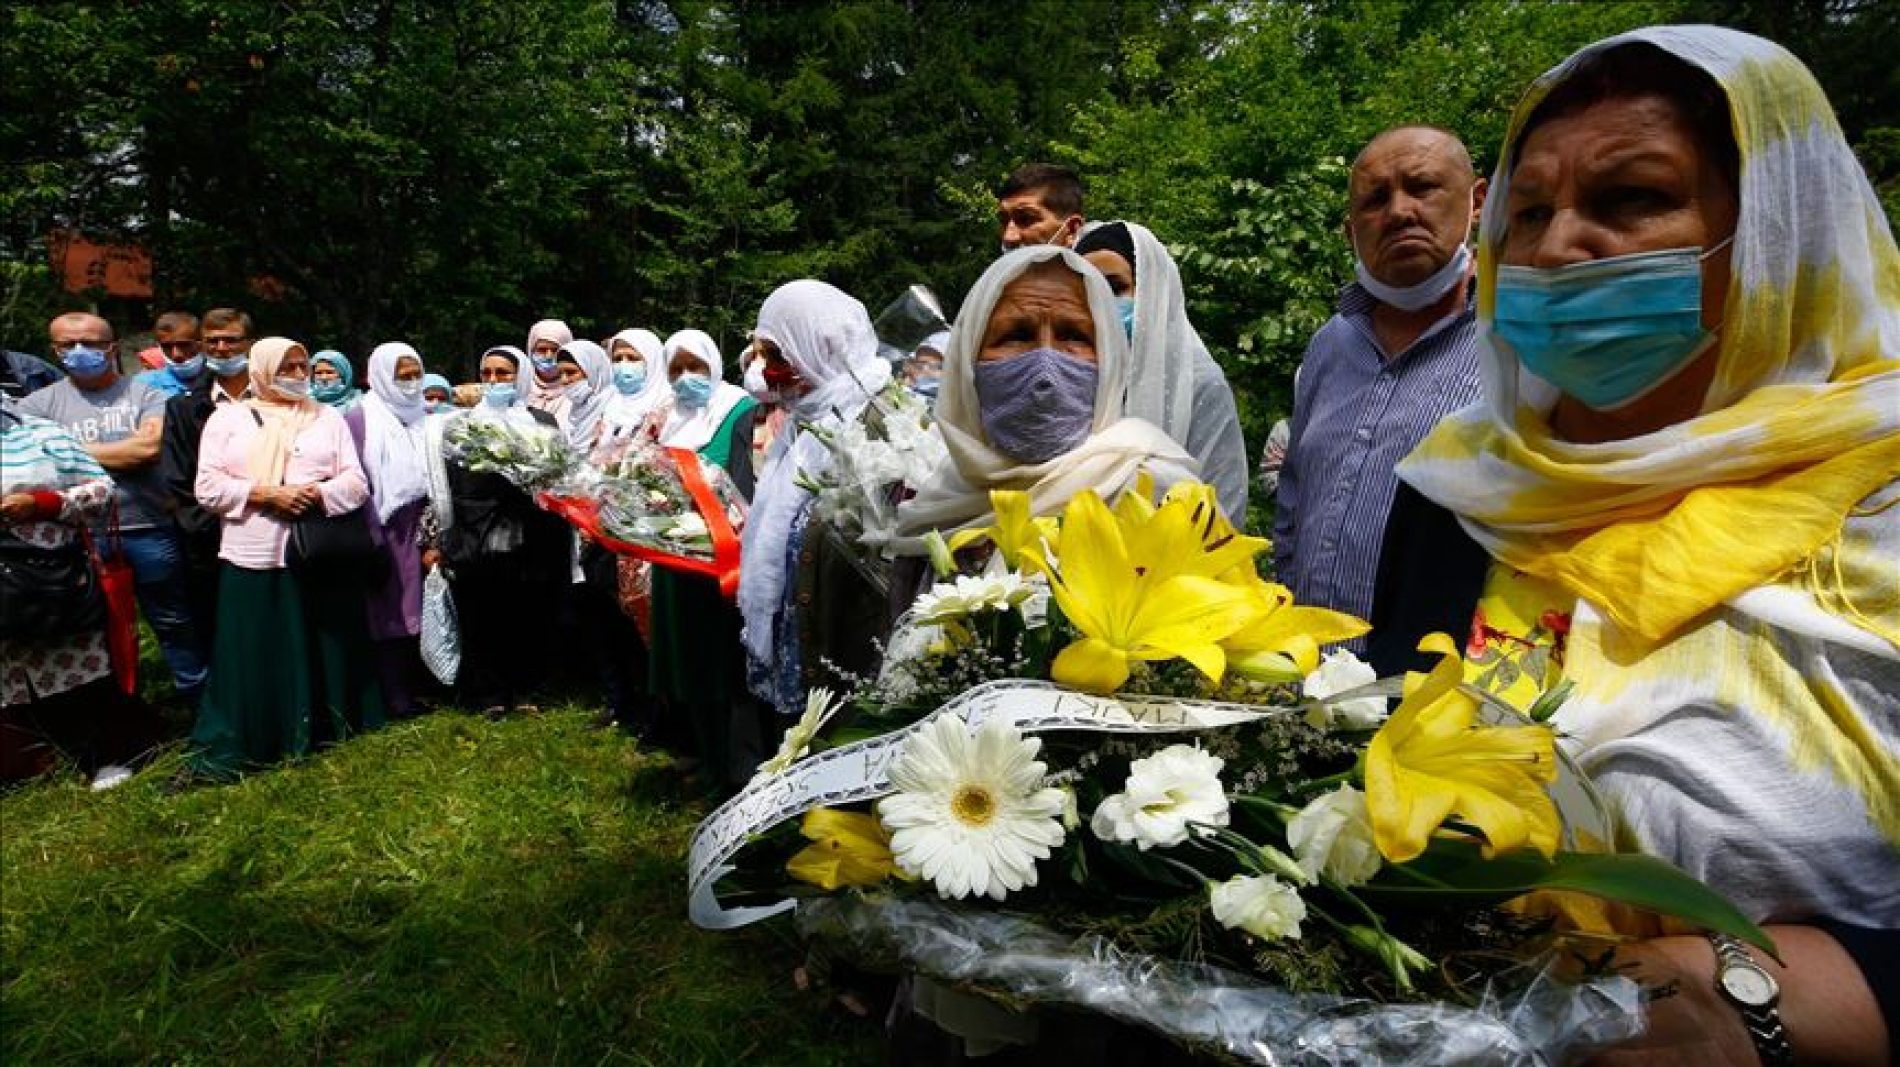 Obilježena godišnjica ubistva šestorice Srebreničana; kukavičke pucnje u leđa zarobljenih zločinci dokumentovali video snimcima